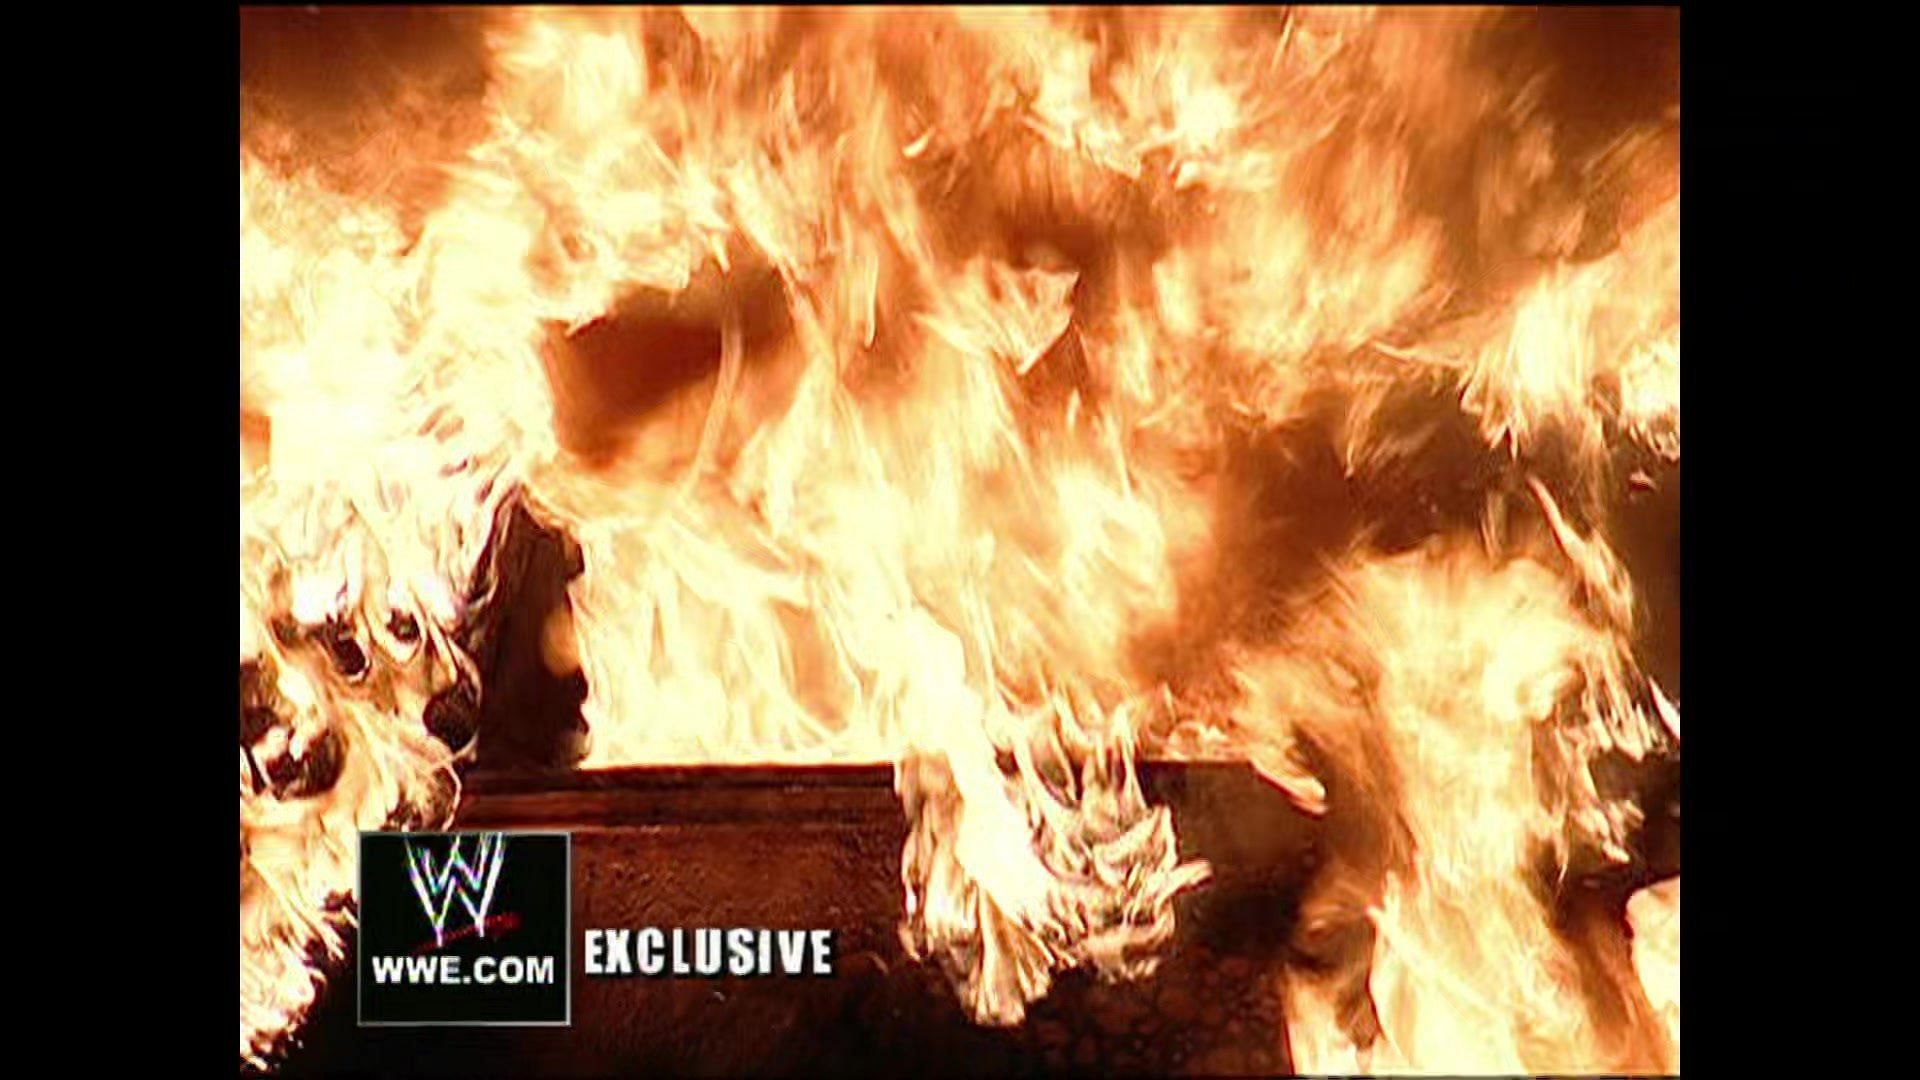 Mr. McMahon's limousine on fire